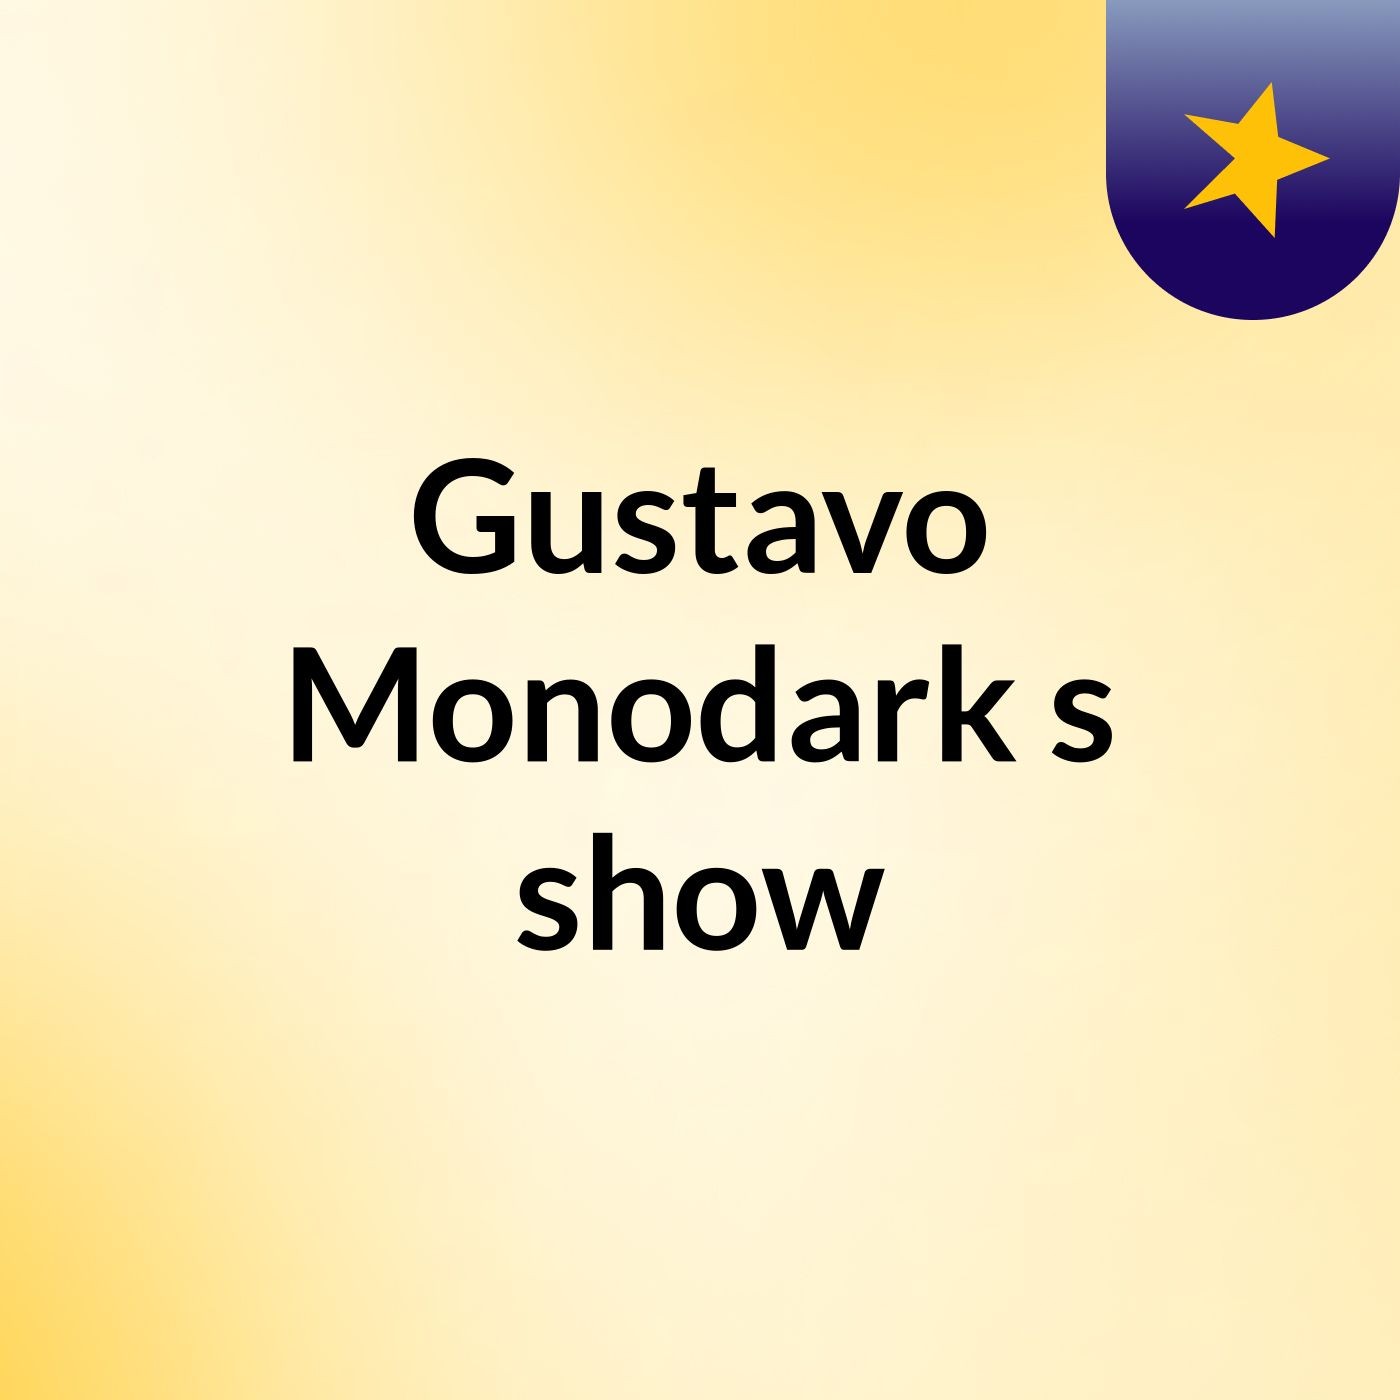 Gustavo Monodark's show